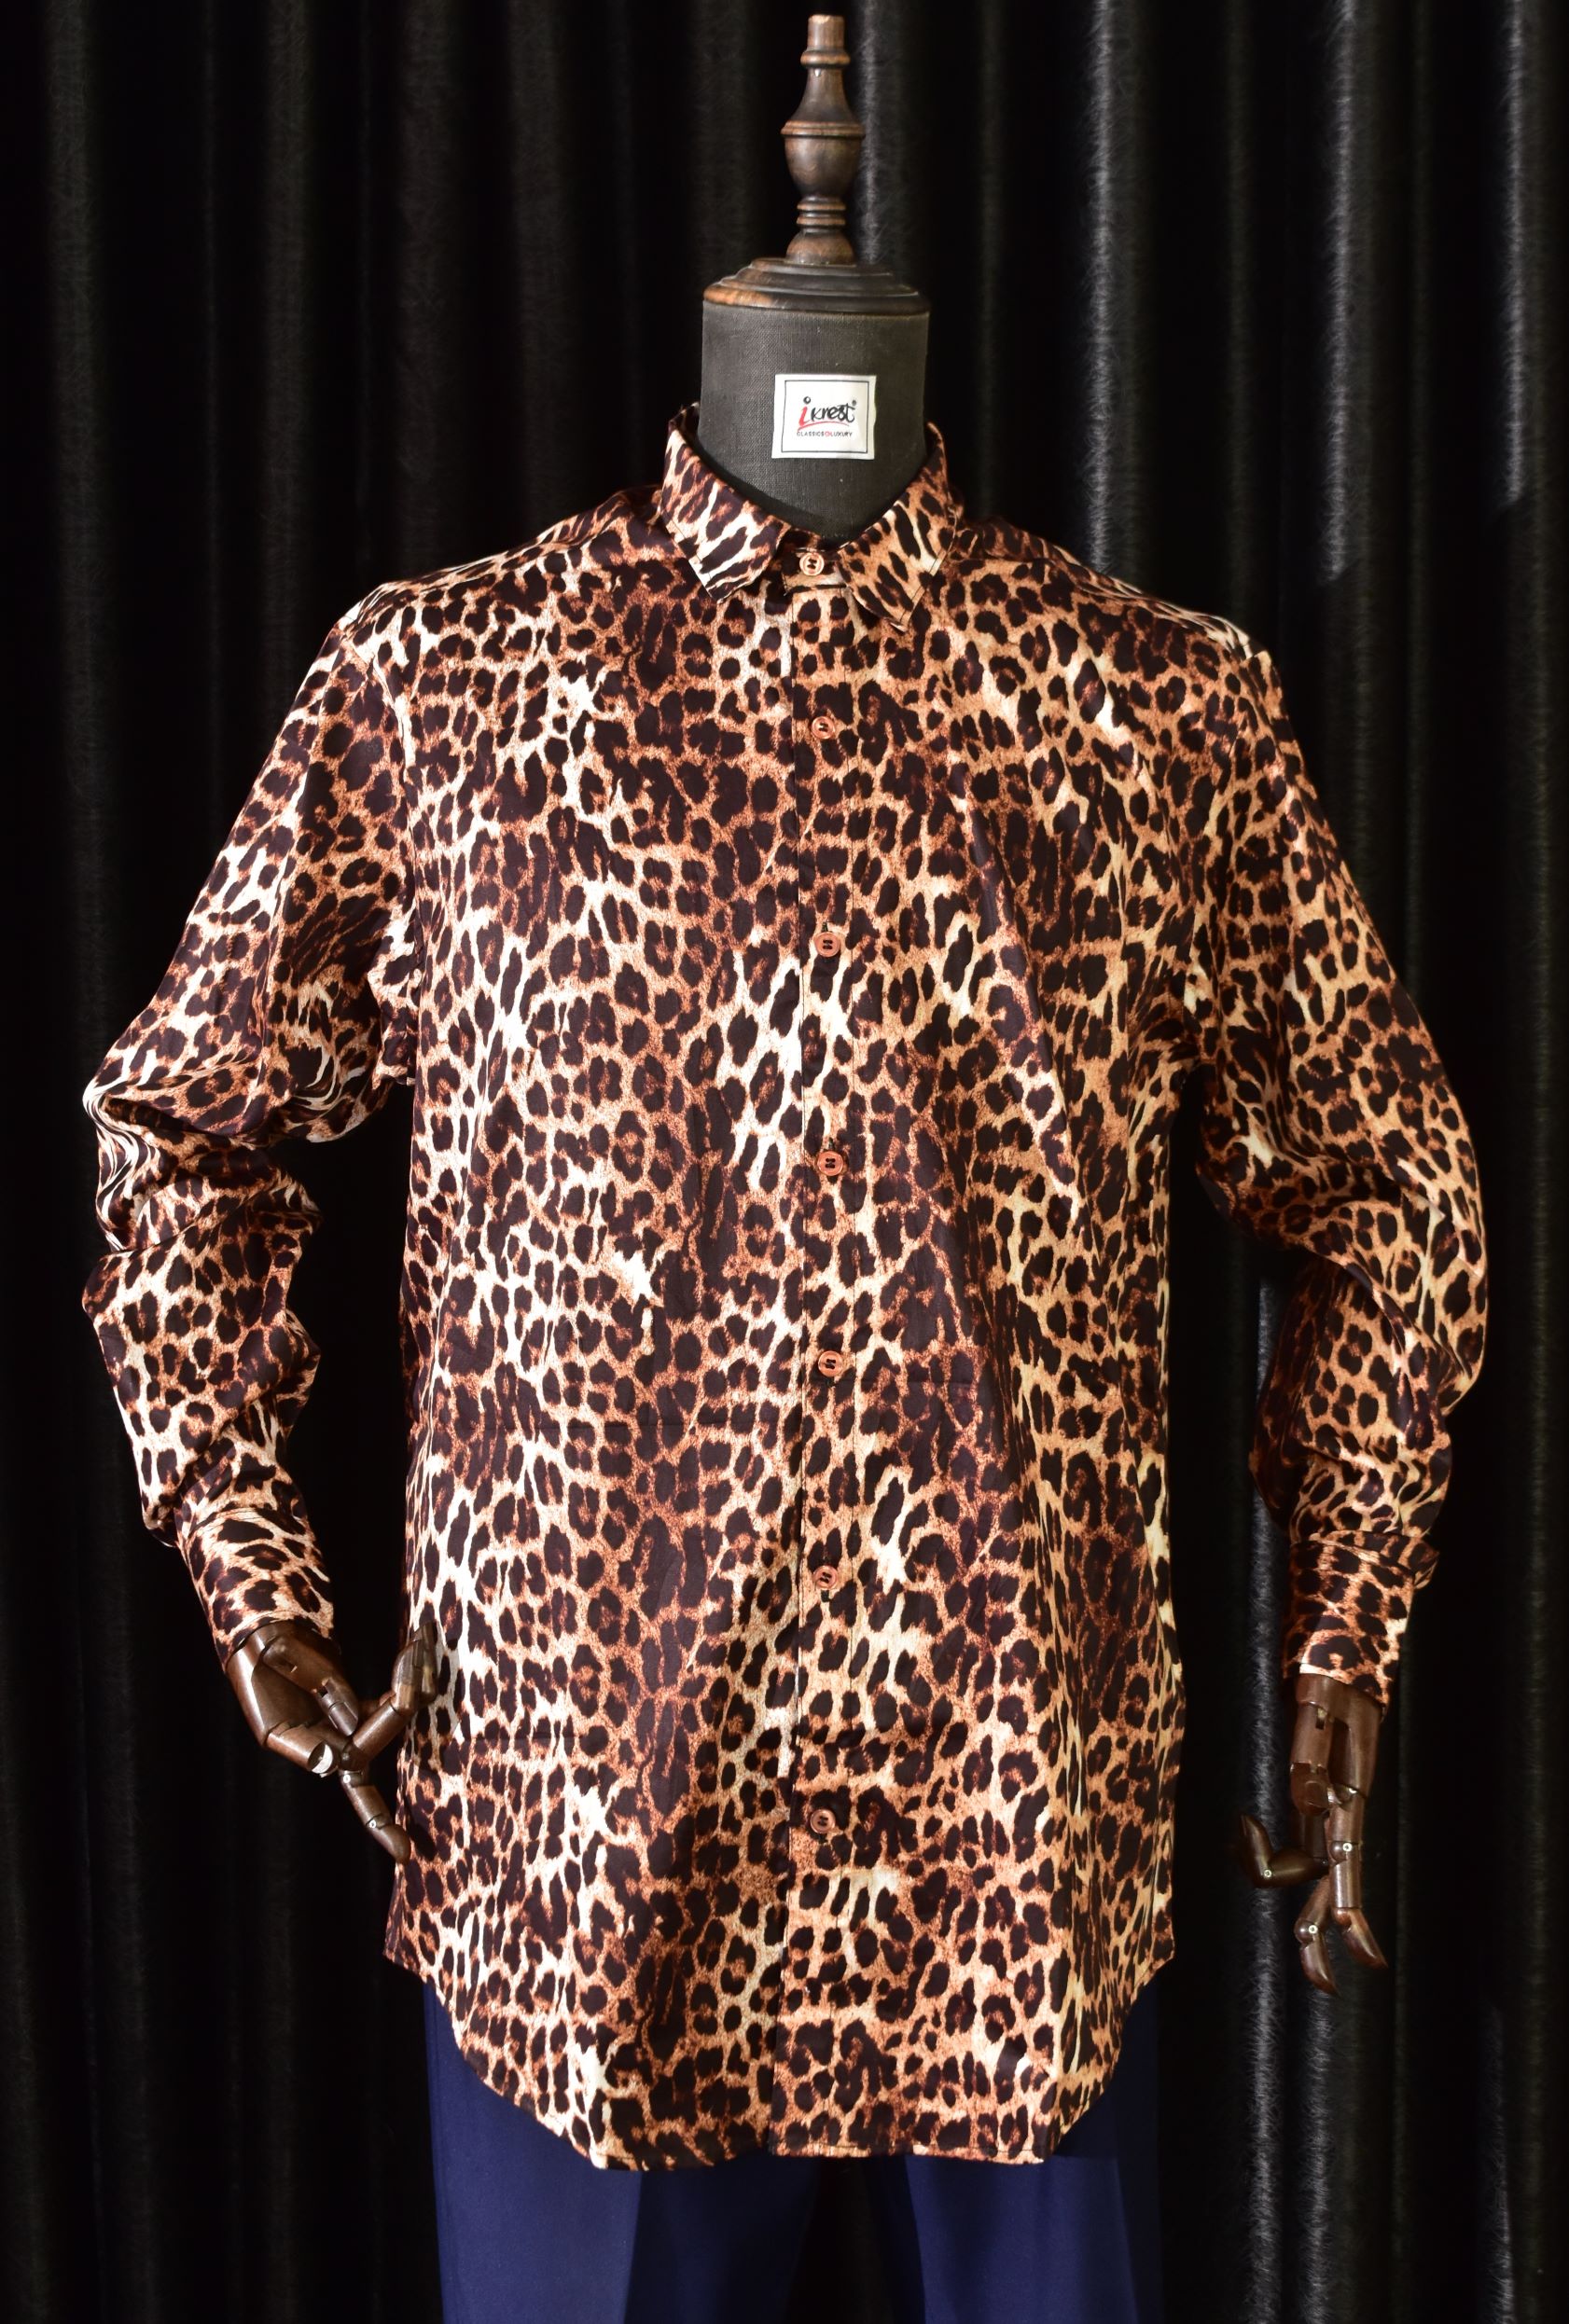 ikrest Leopard Fur Fabric